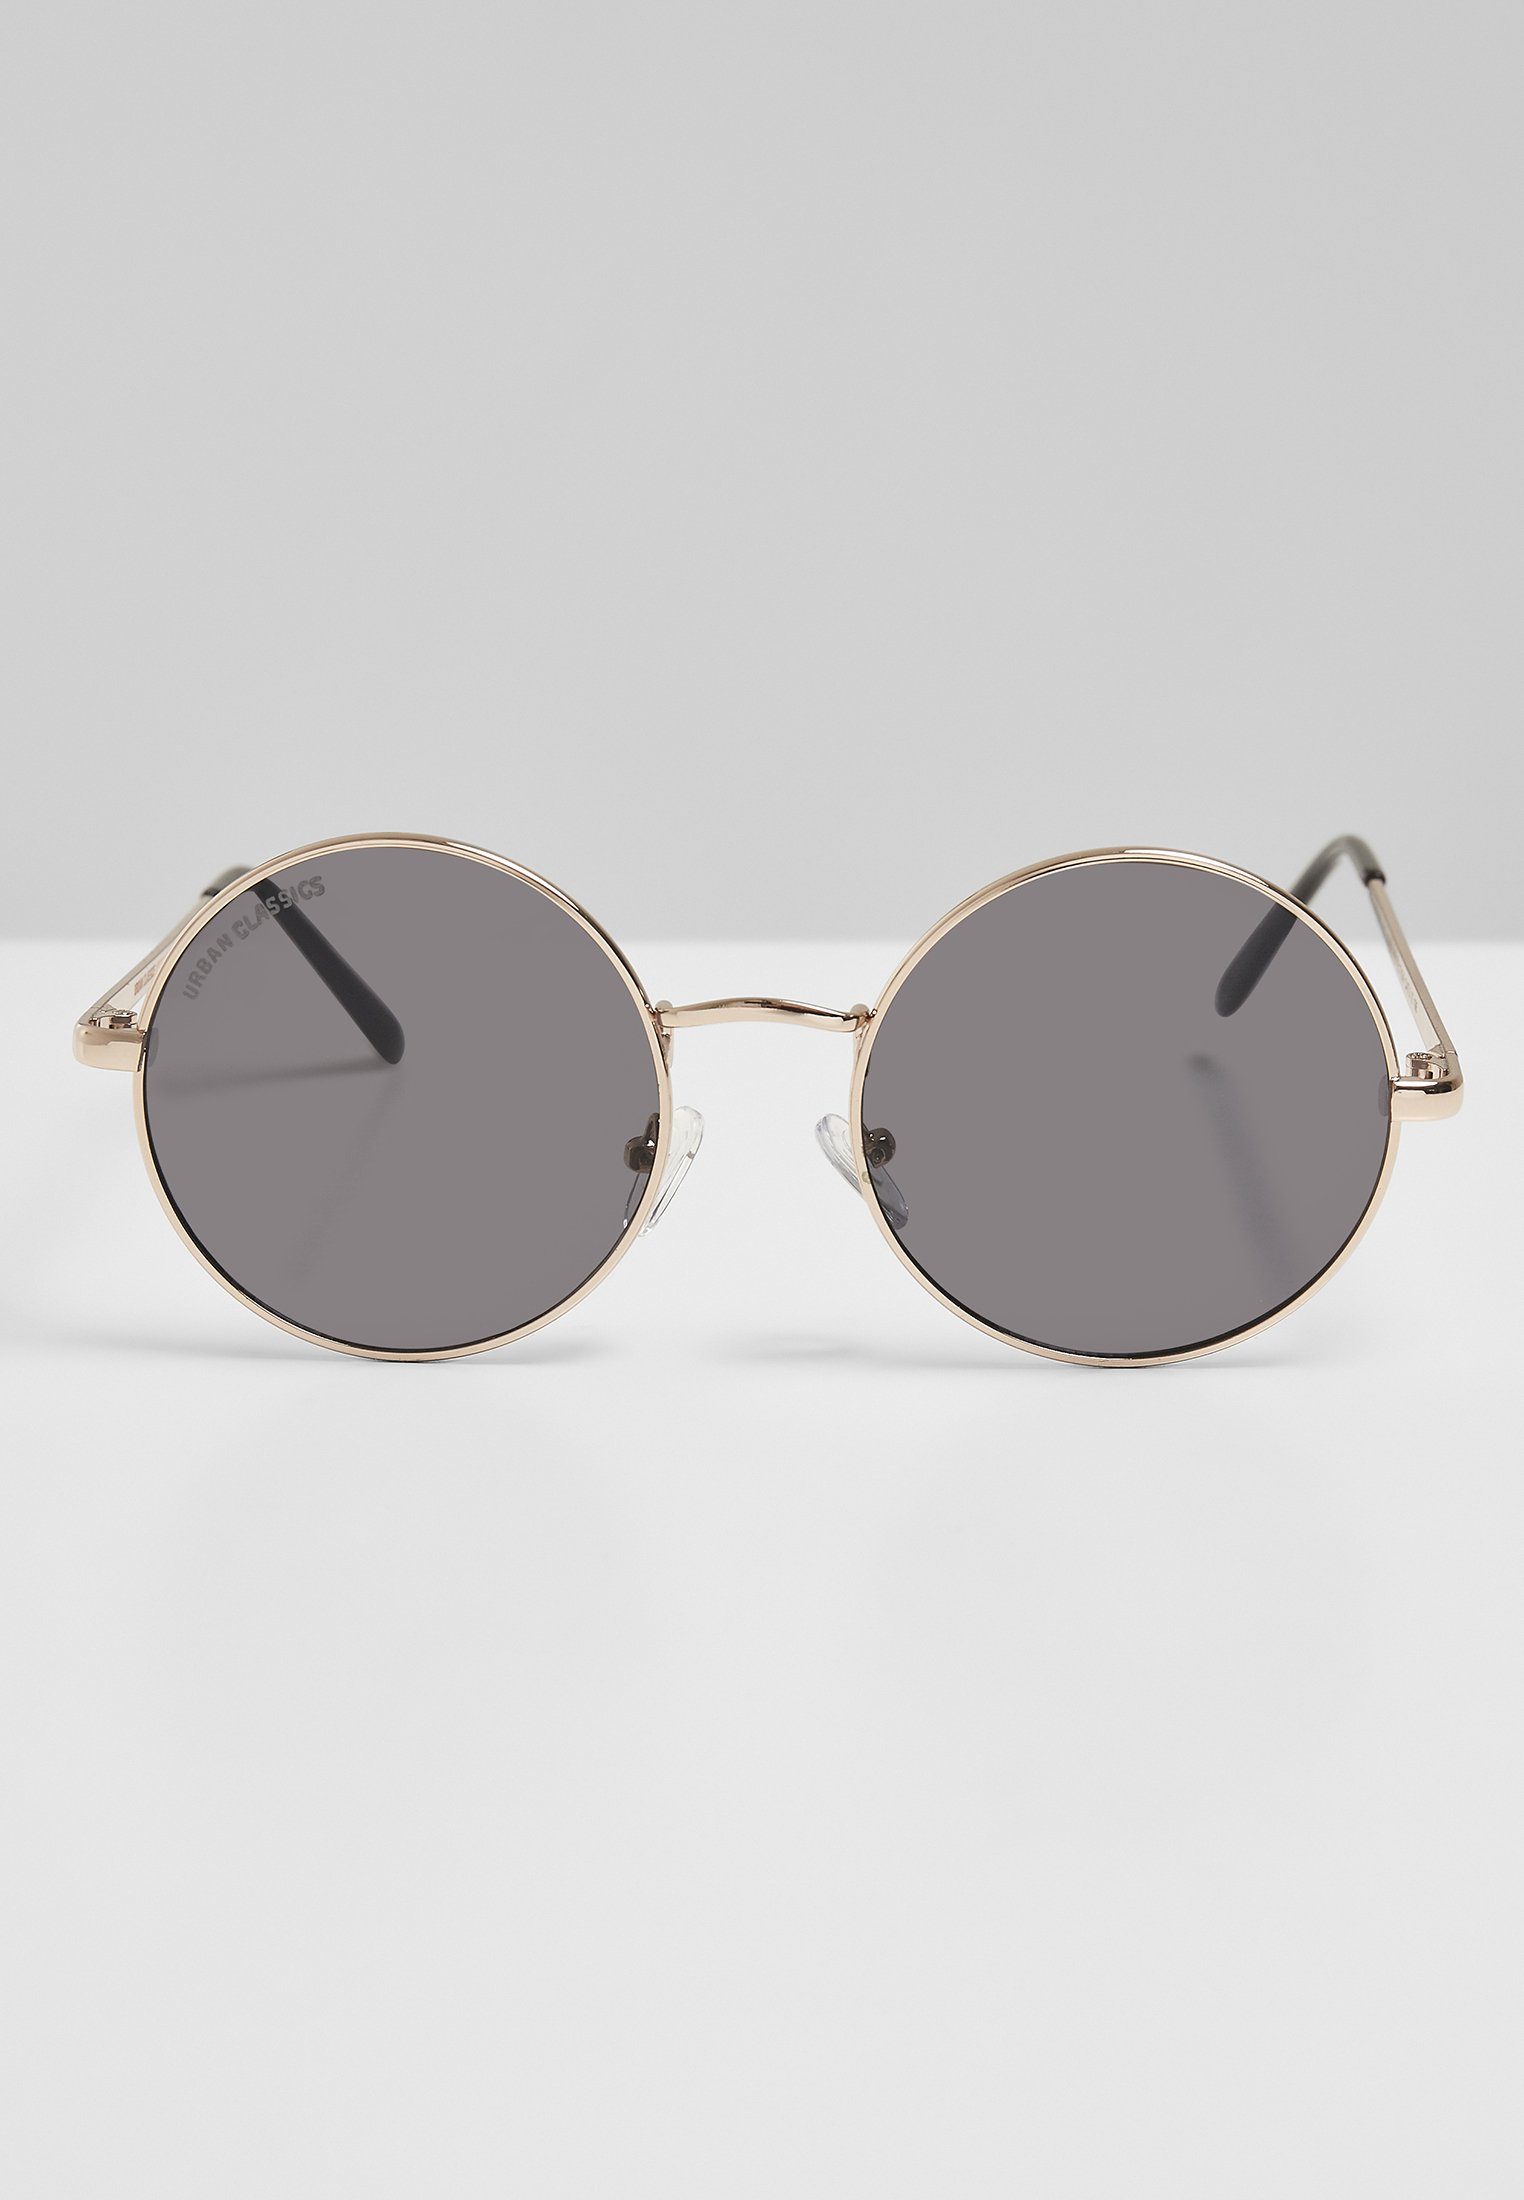 URBAN CLASSICS Sonnenbrille Accessoires UC gold/blk Sunglasses 107